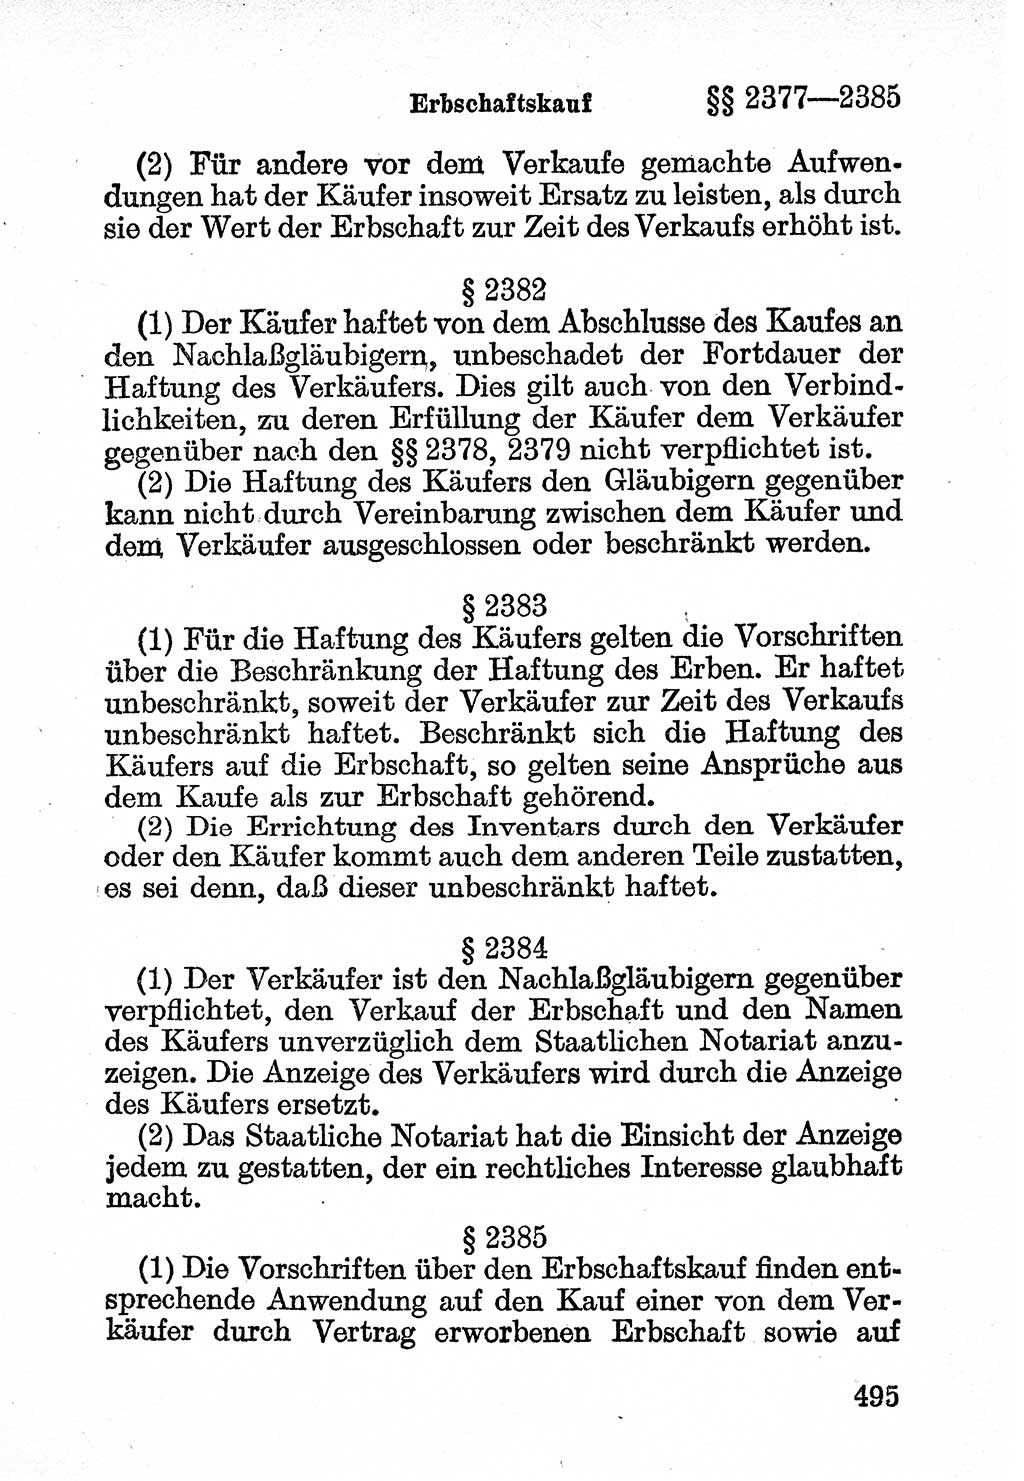 Bürgerliches Gesetzbuch (BGB) nebst wichtigen Nebengesetzen [Deutsche Demokratische Republik (DDR)] 1956, Seite 495 (BGB Nebenges. DDR 1956, S. 495)